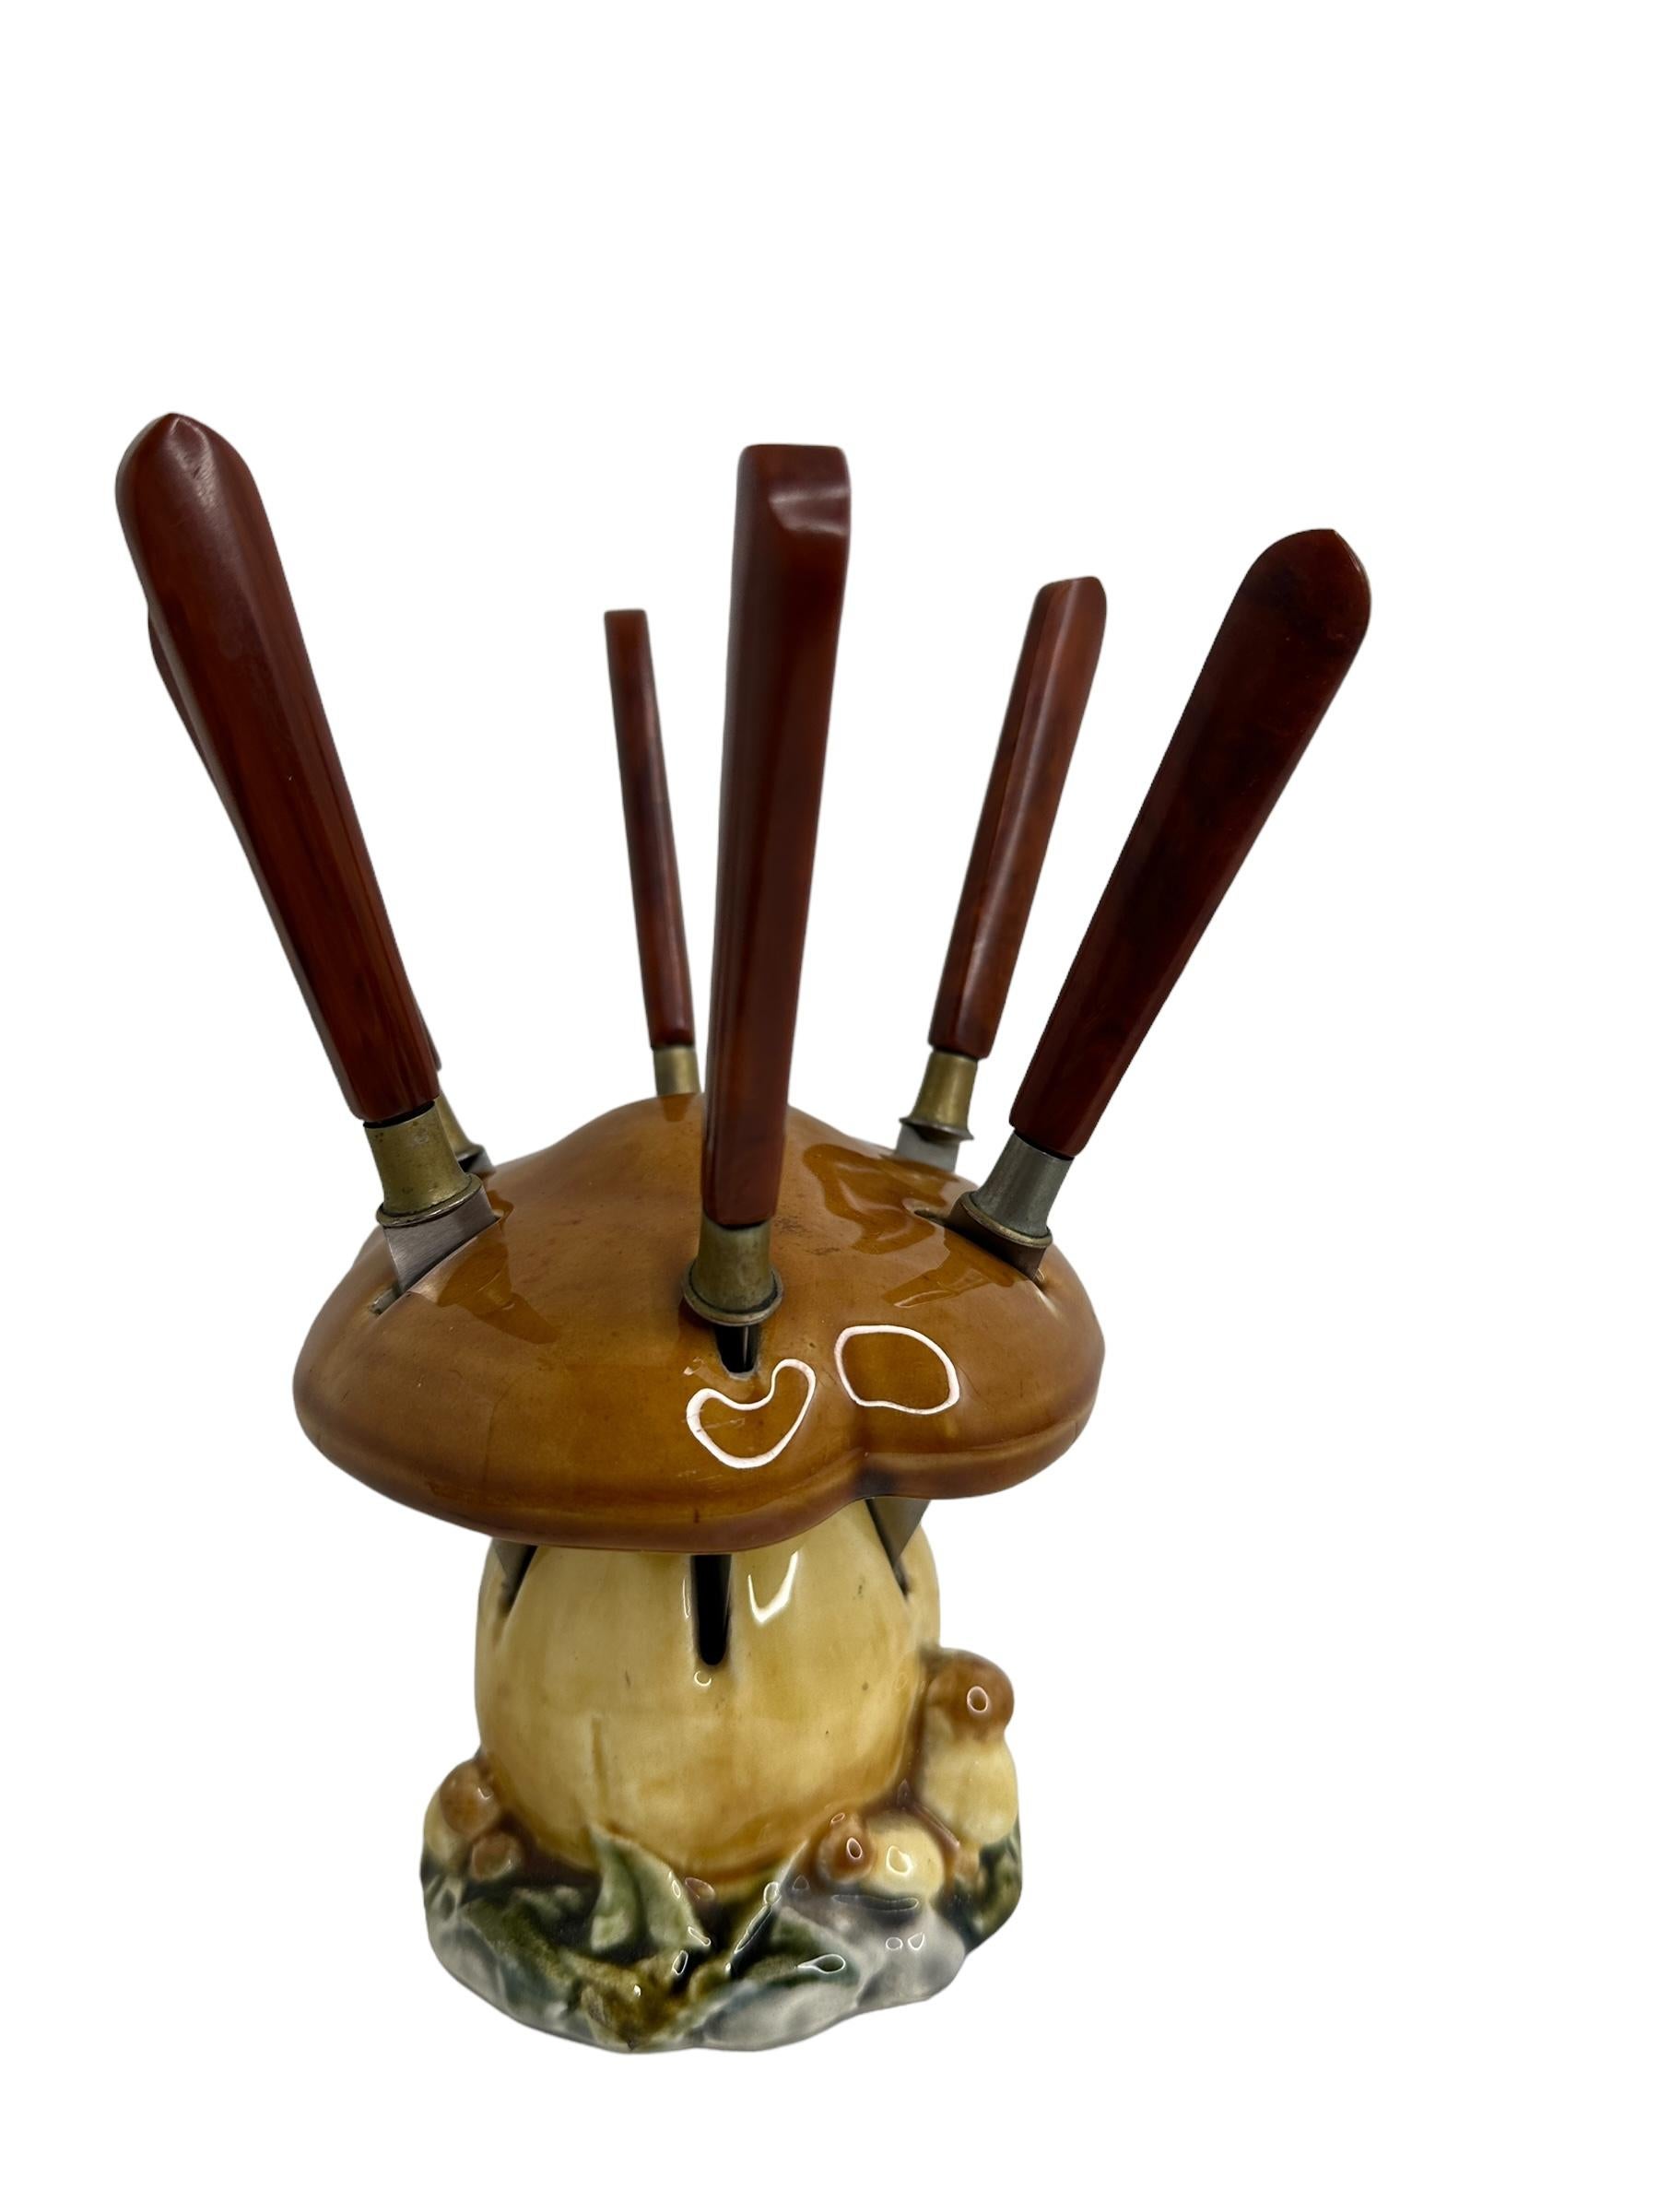 Art Deco Bakelite Fruit Knife Set with Ceramic Mushroom Stand, Vintage German 1930s For Sale